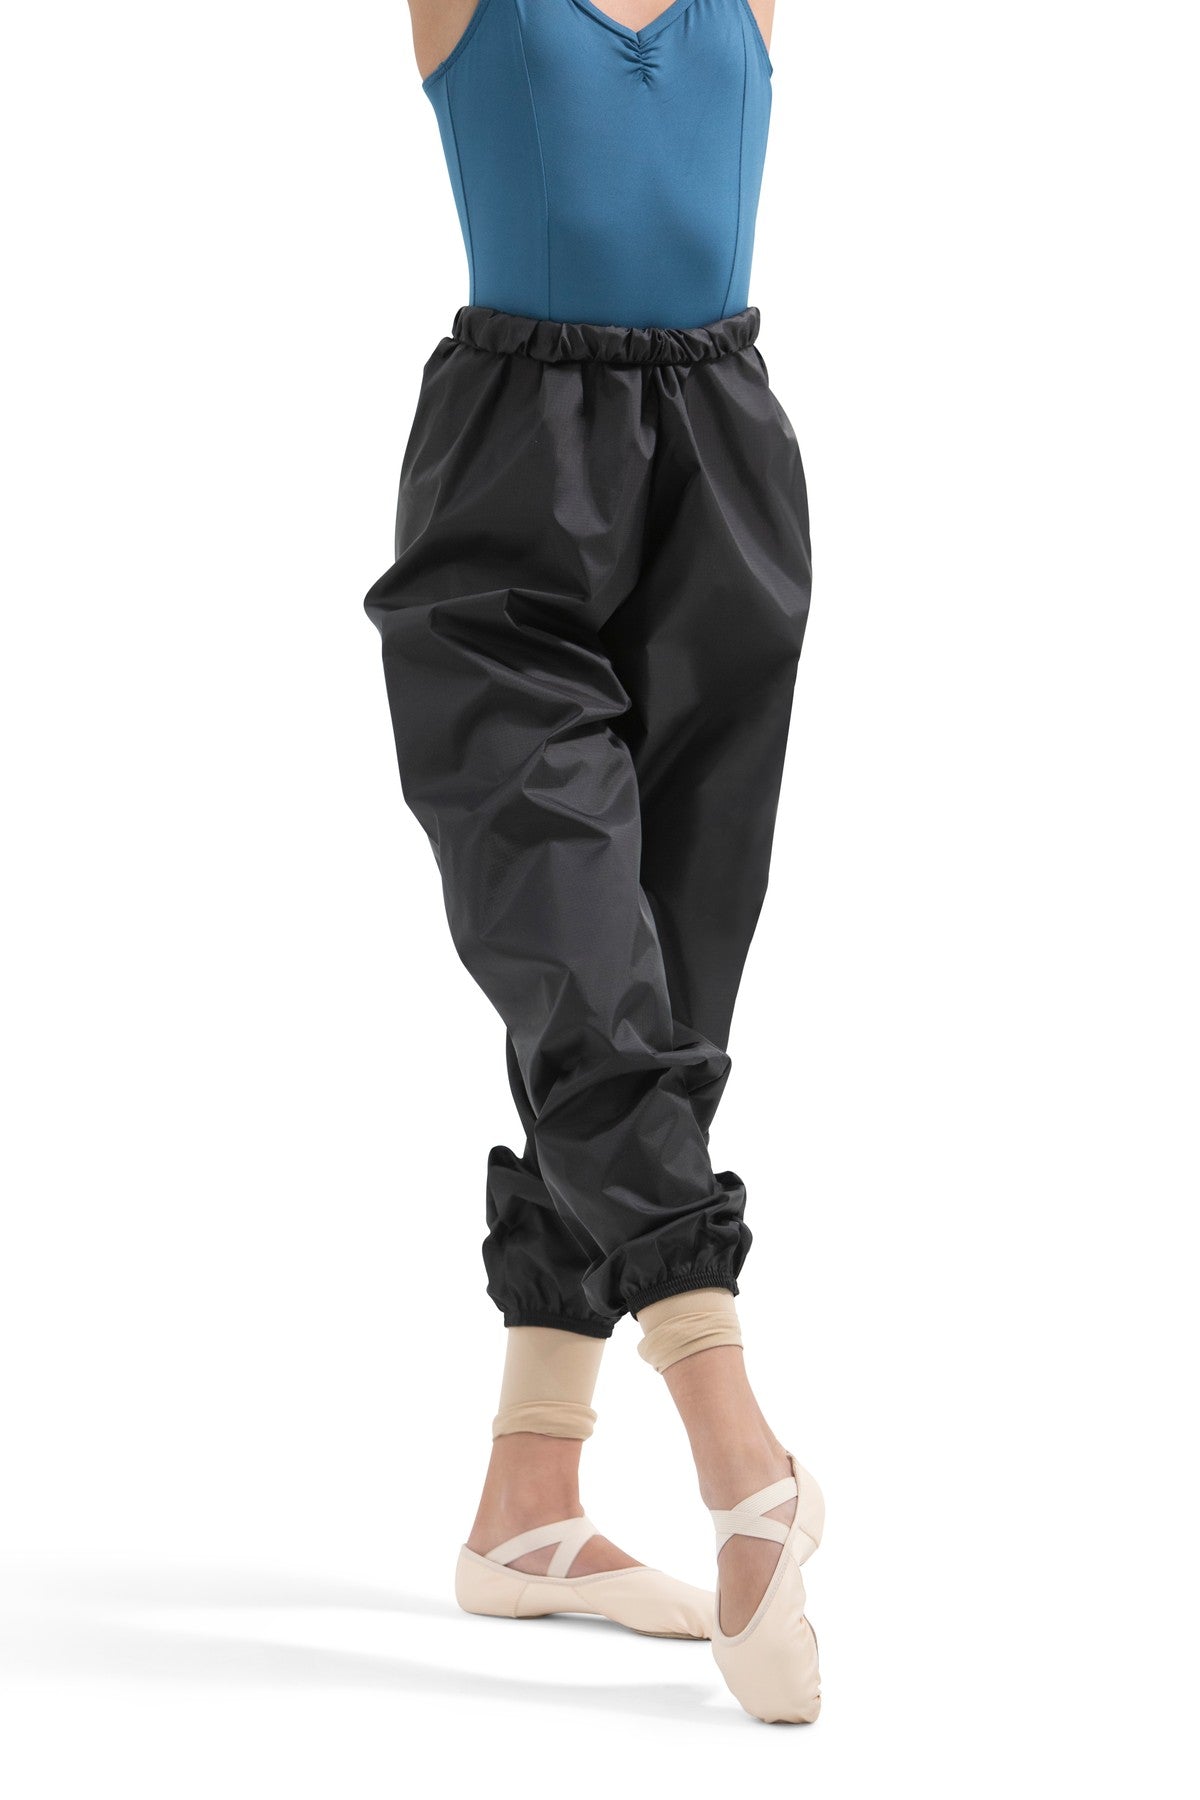 Capezio Hanami Leather Split Sole LPK Ballet Shoe Adults 2038W – Pure Dance